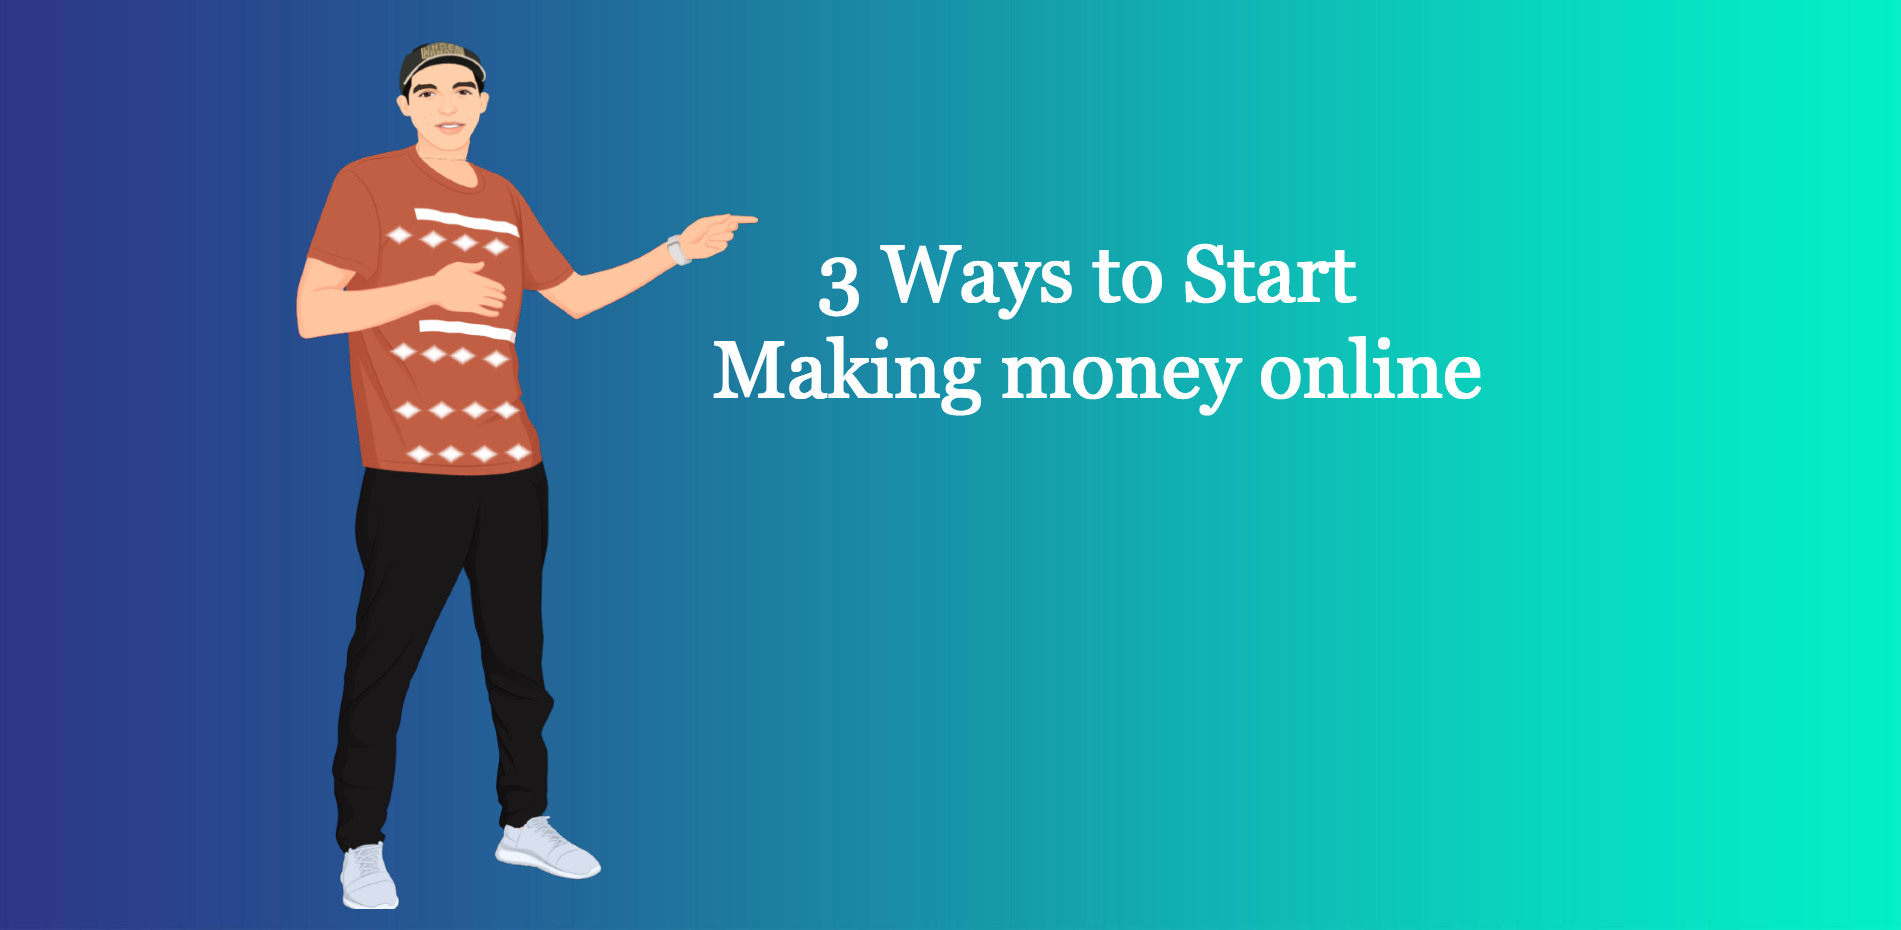 3 ways to start making money online